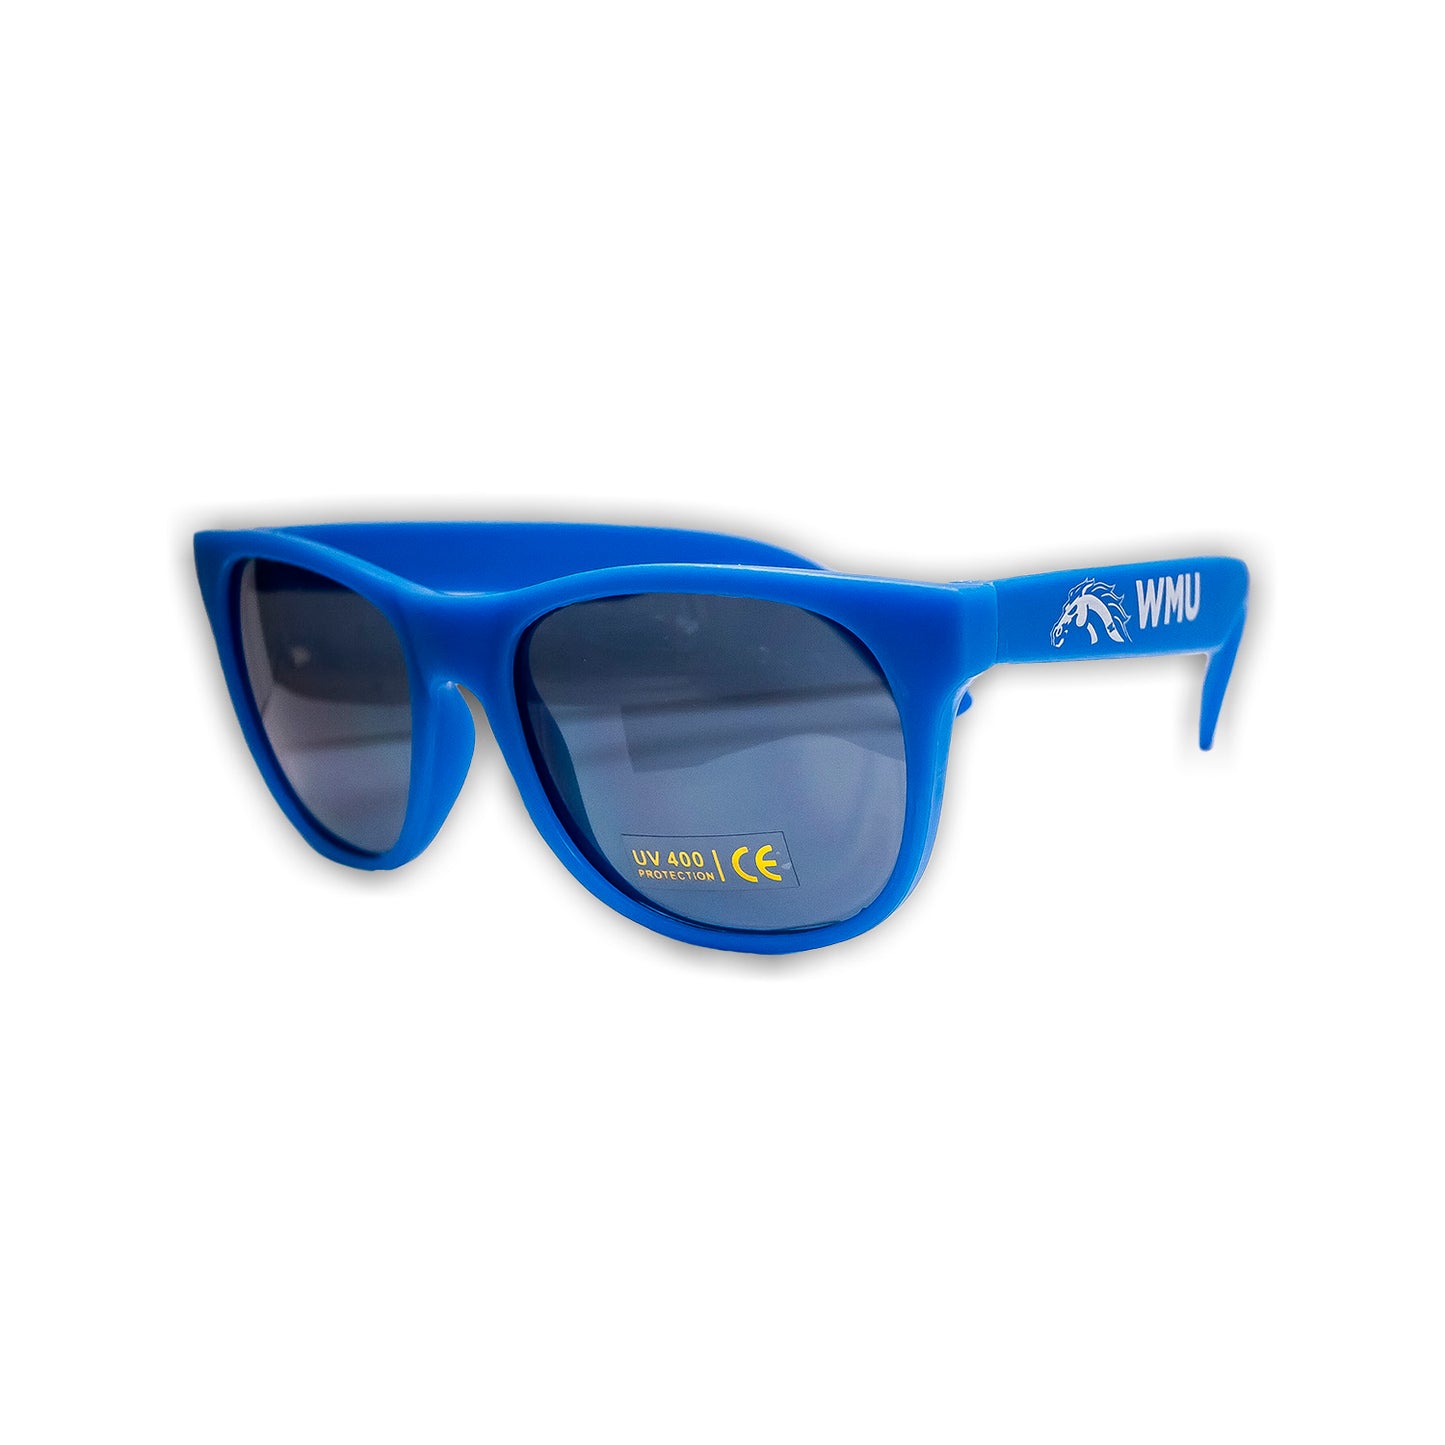 WMU Sunglasses